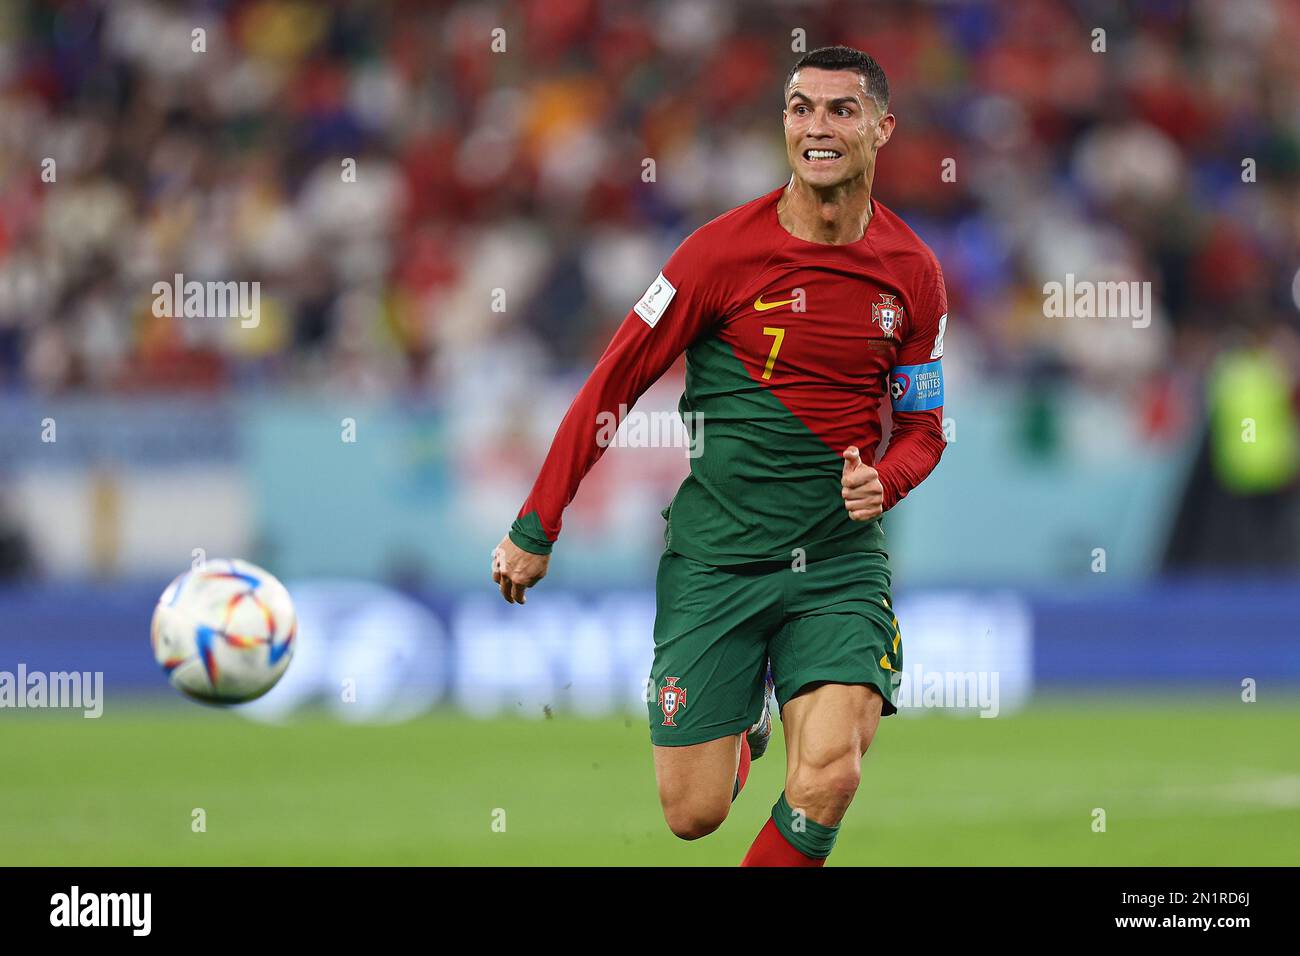 DOHA, QATAR - NOVEMBRE 24 : Cristiano Ronaldo lors de la coupe du monde de la FIFA, Qatar 2022, match du Groupe H entre le Portugal et le Ghana au stade 974 sur 24 novembre 2022 à Doha, Qatar. (Photo par MB Media) Banque D'Images